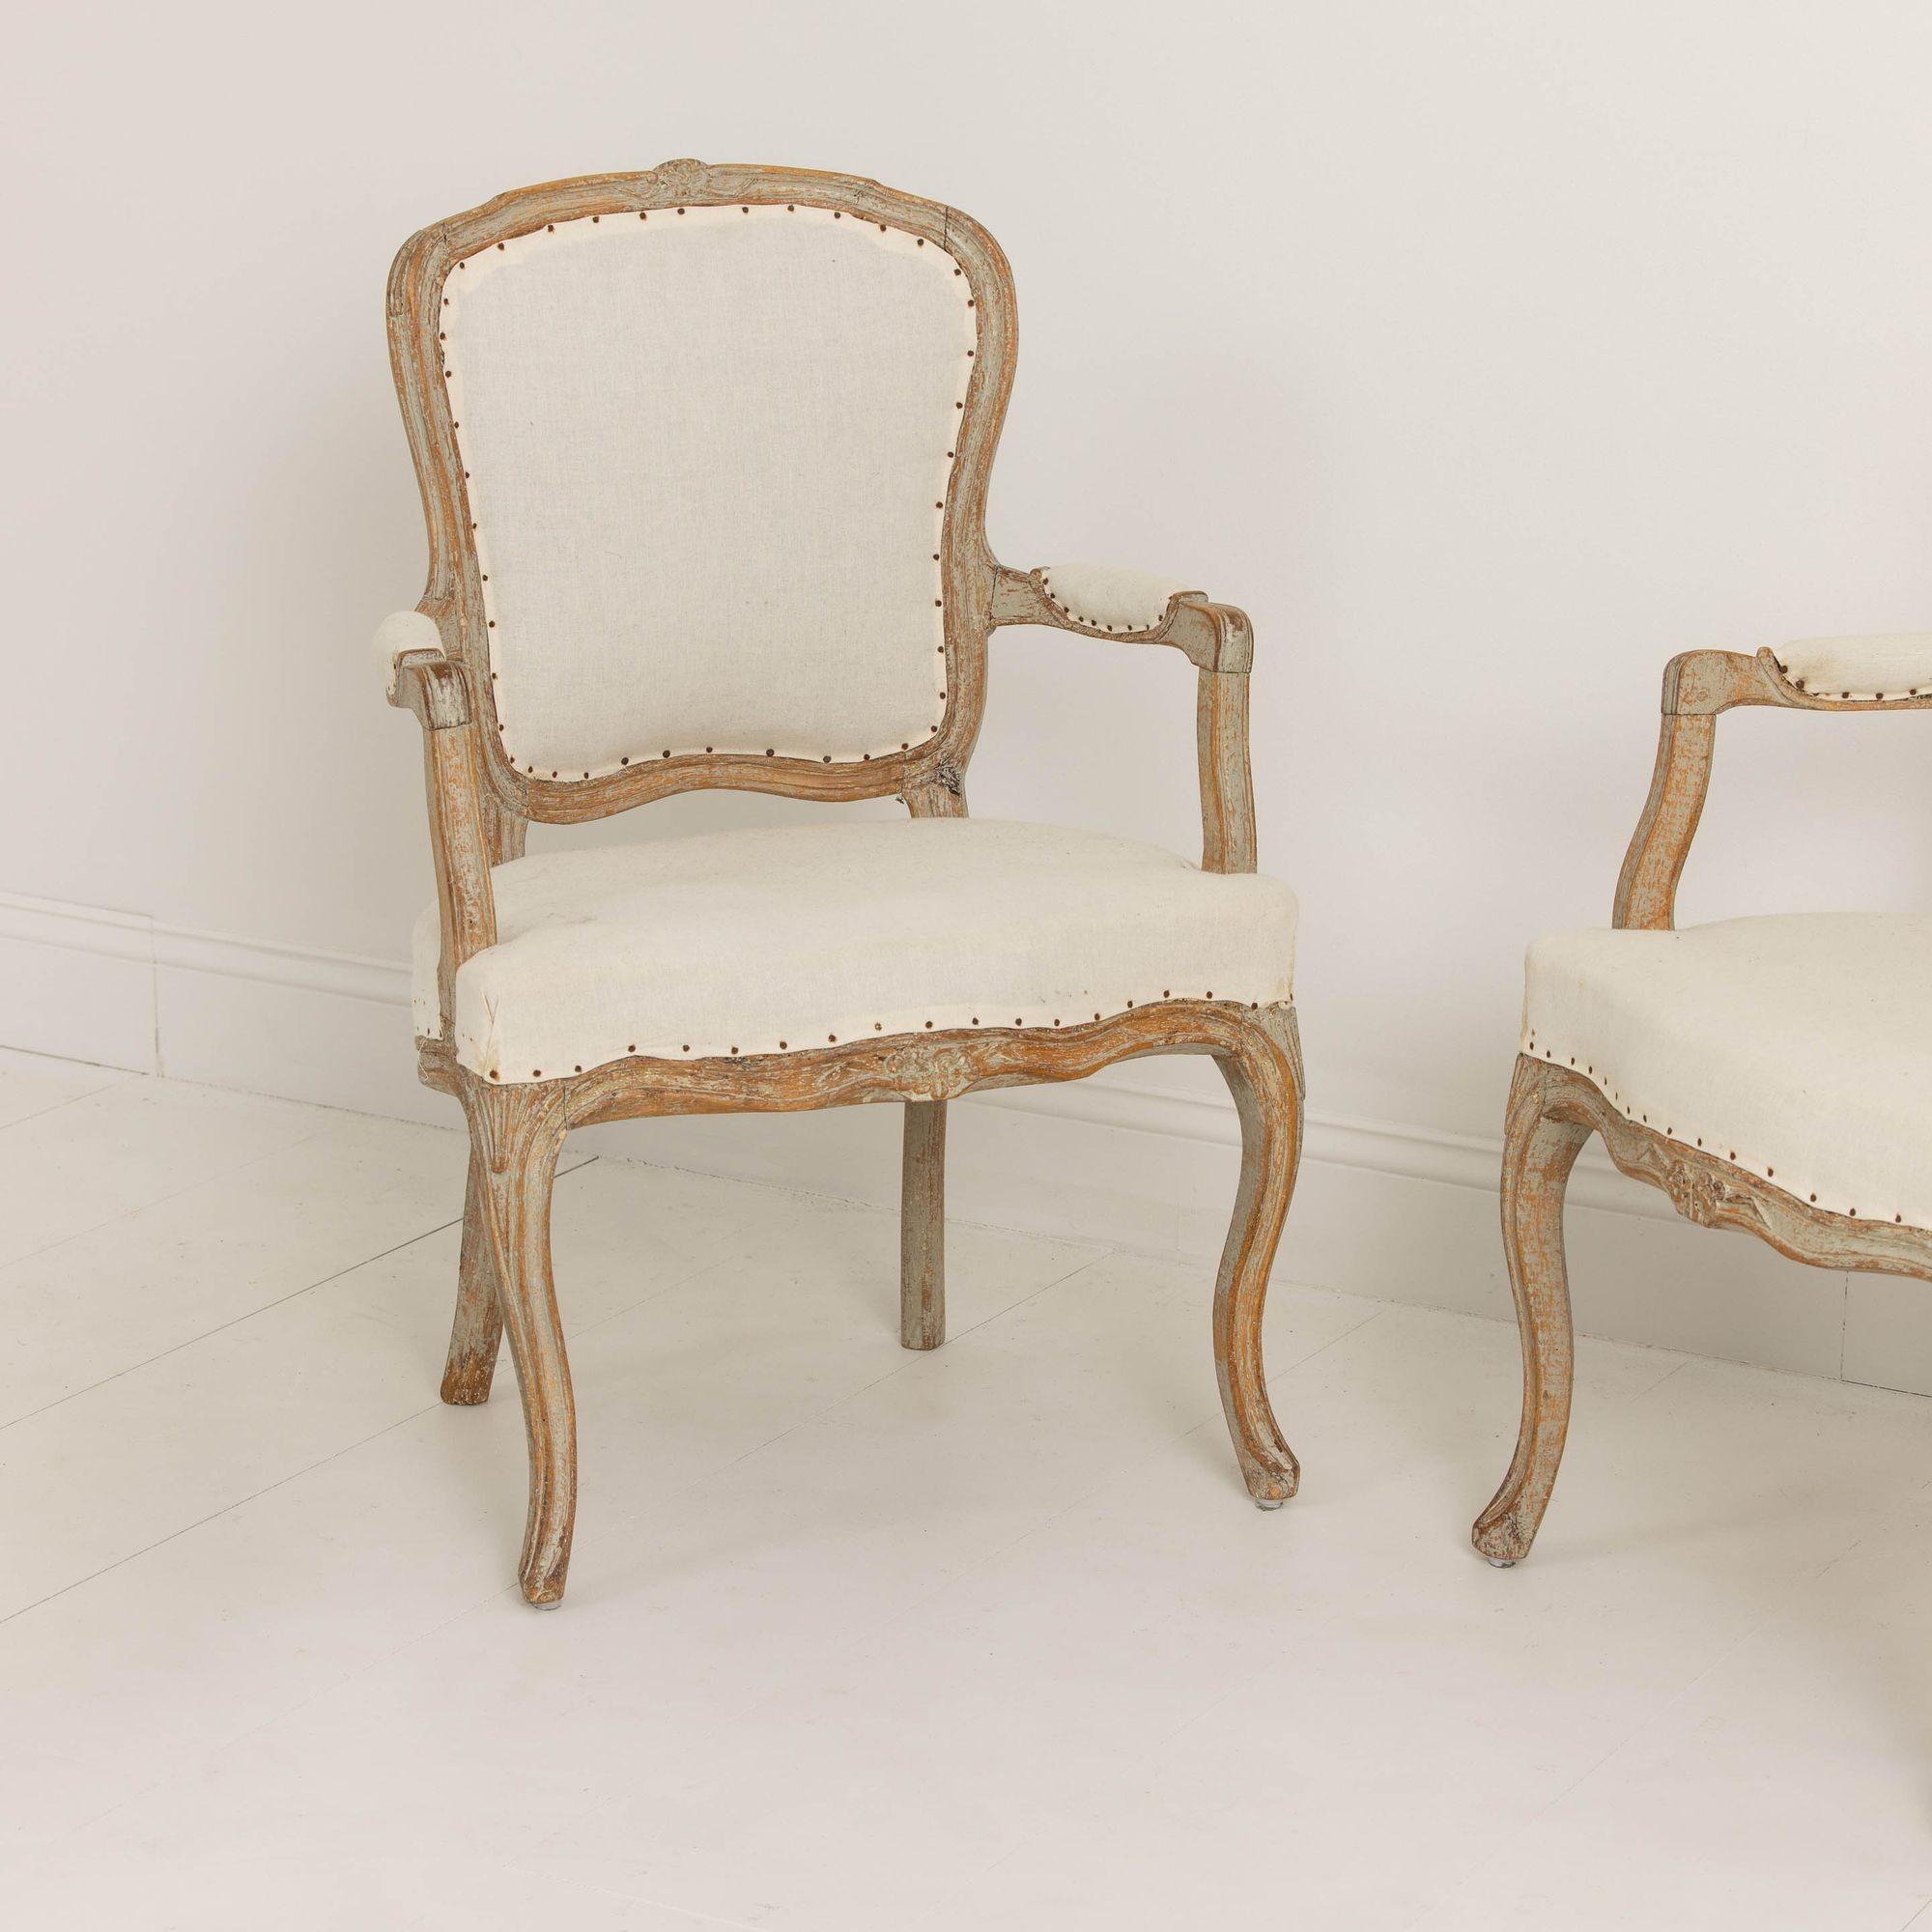 Une paire de fauteuils suédois de la période Rococo, grattés à la main jusqu'à la peinture d'origine, provenant de Lindome, vers 1780. Cadre de forme élégante avec de magnifiques motifs floraux sculptés sur le dossier de la chaise et l'avant de